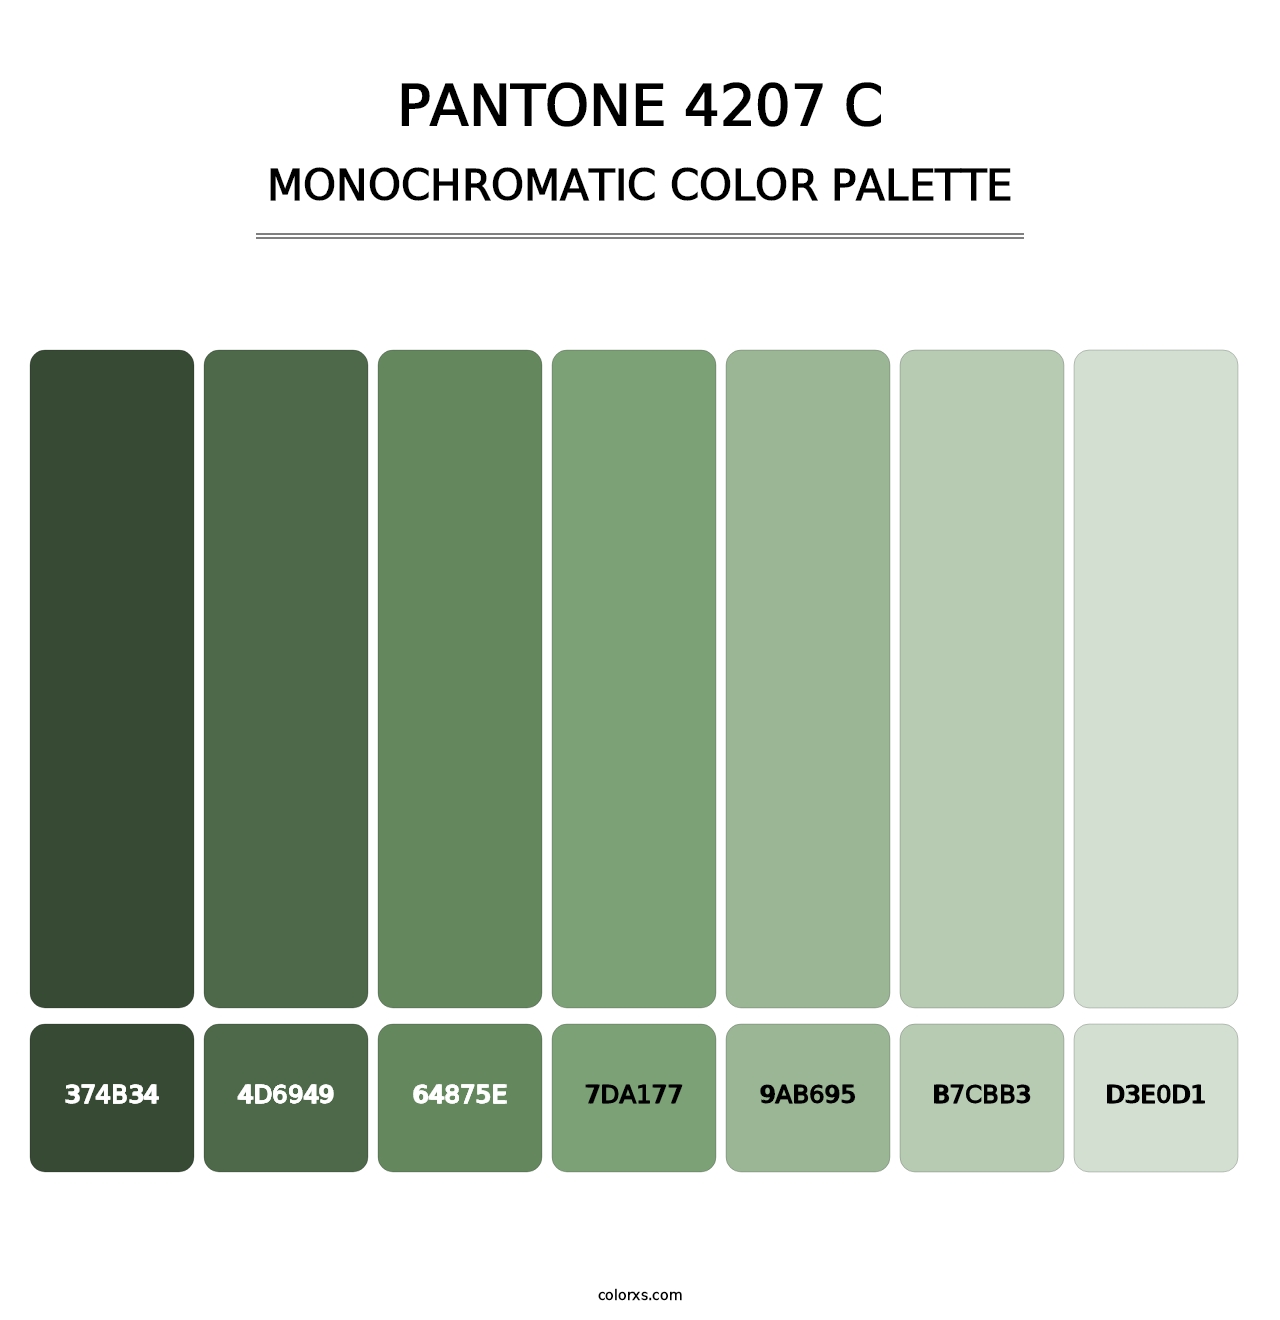 PANTONE 4207 C - Monochromatic Color Palette